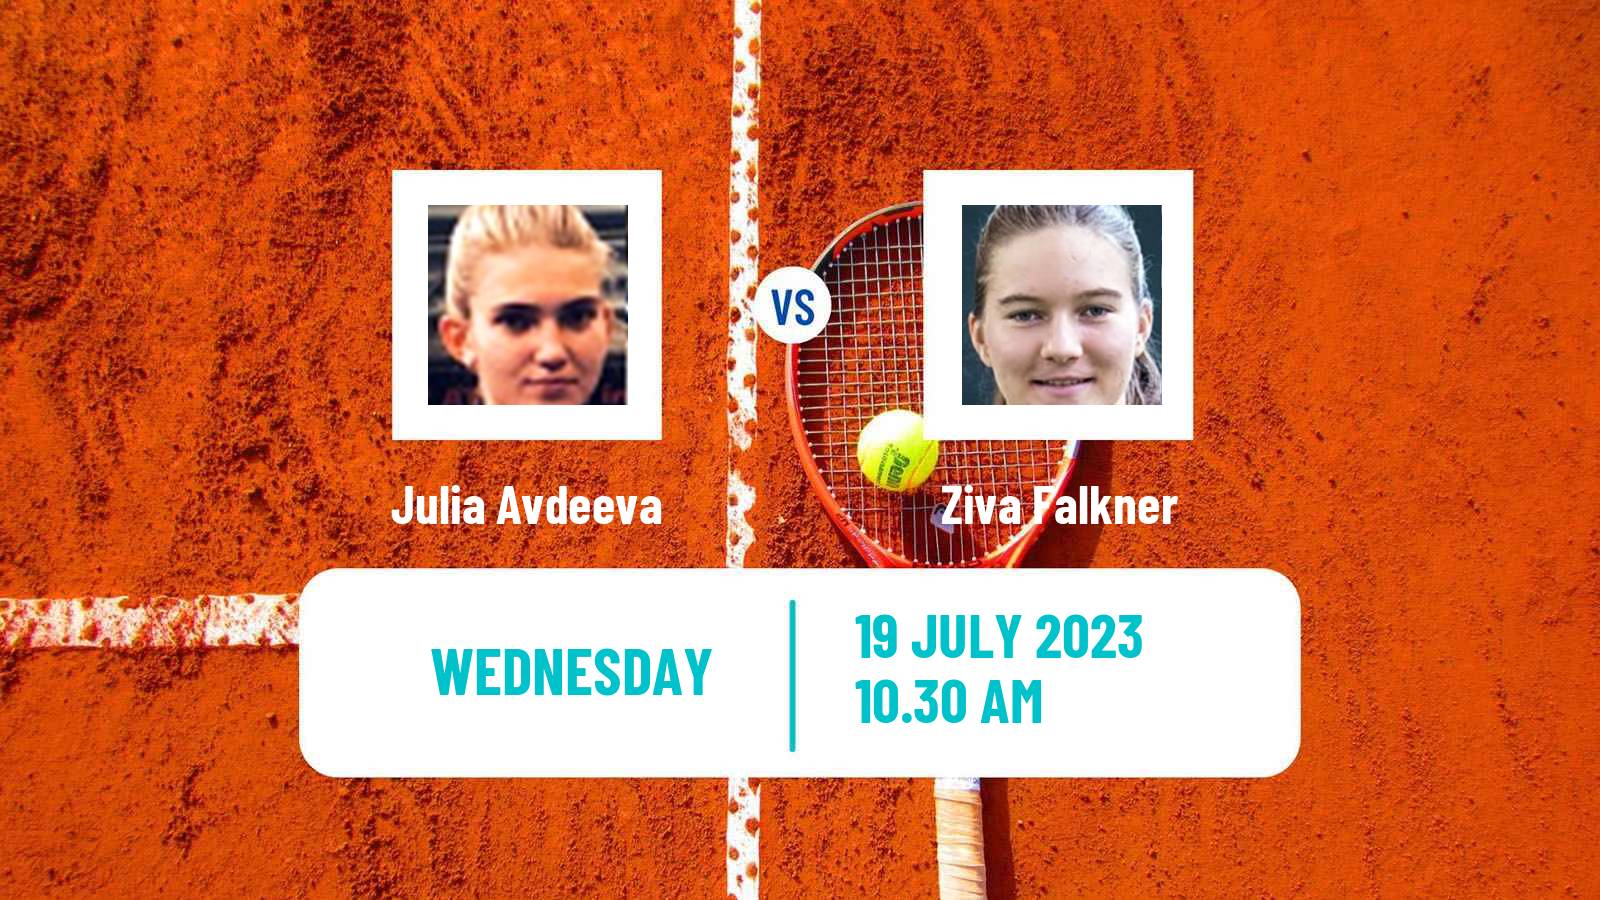 Tennis ITF W25 Darmstadt Women Julia Avdeeva - Ziva Falkner